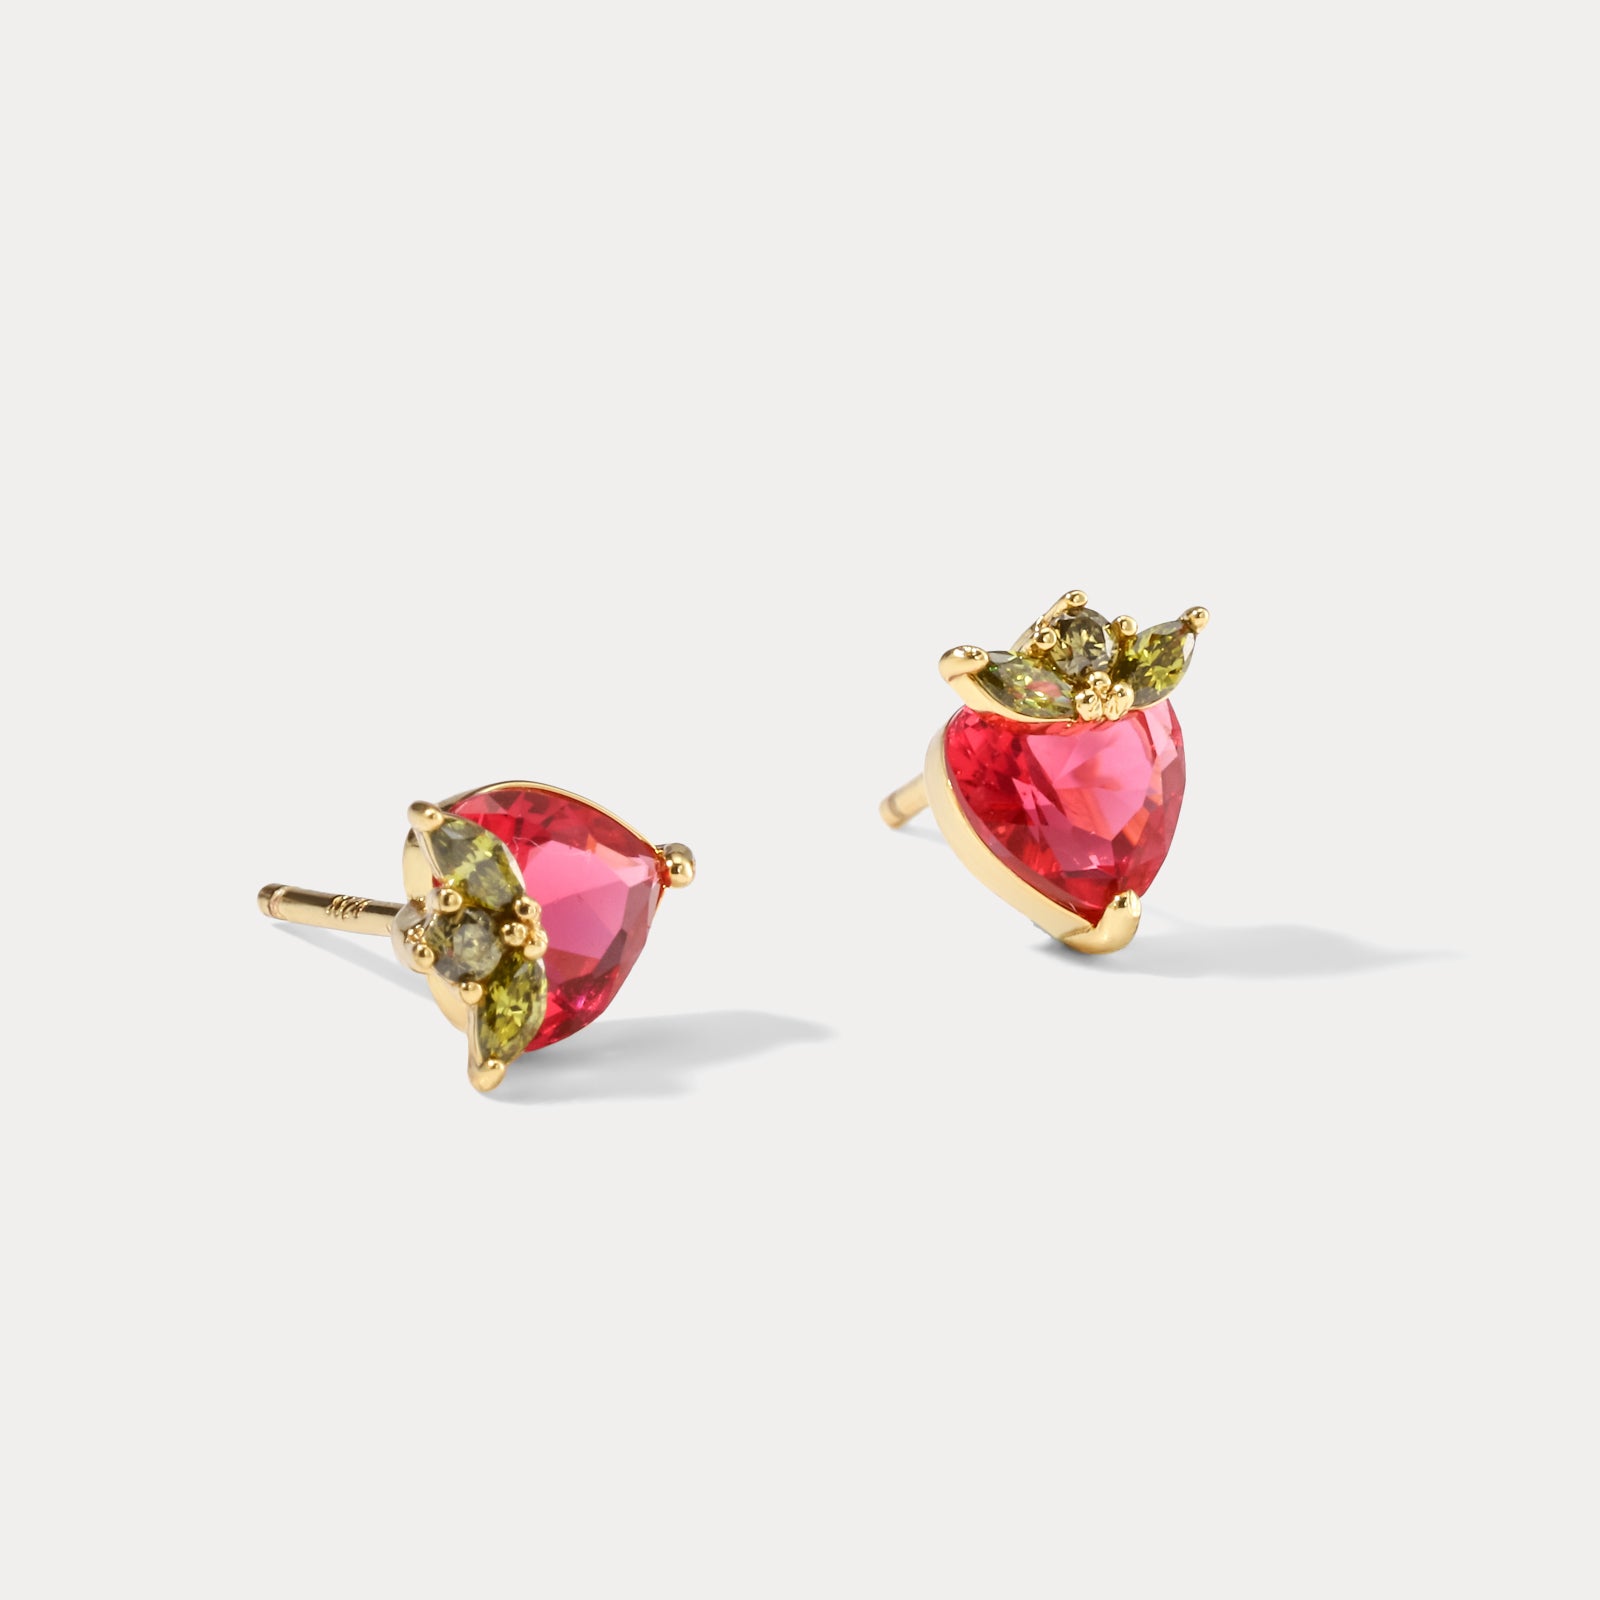 Strawberry Fruit Funky Earrings Set